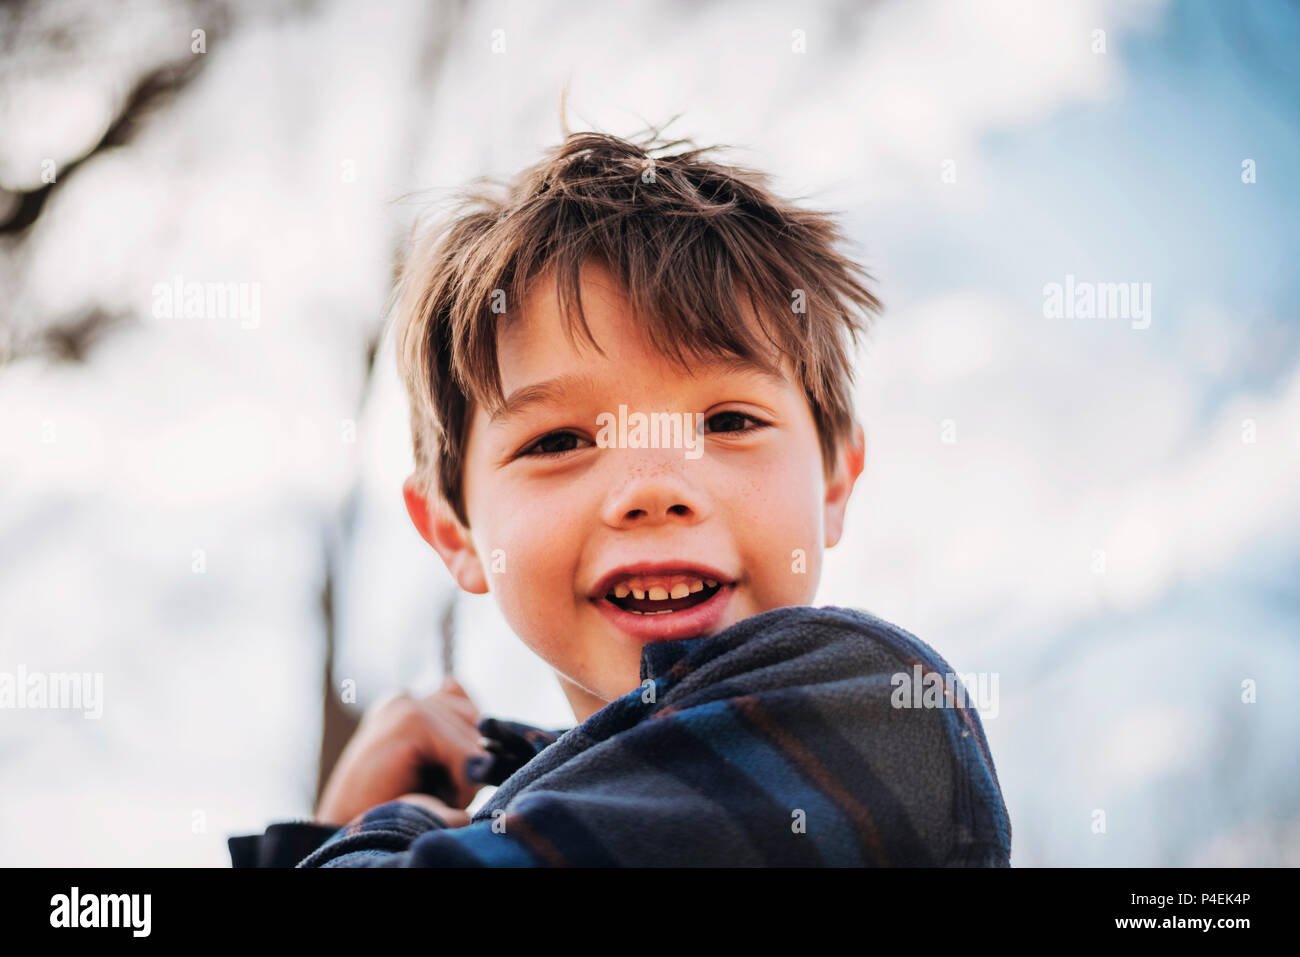 Portrait eines lächelnden jungen auf einer Schaukel Stockfoto